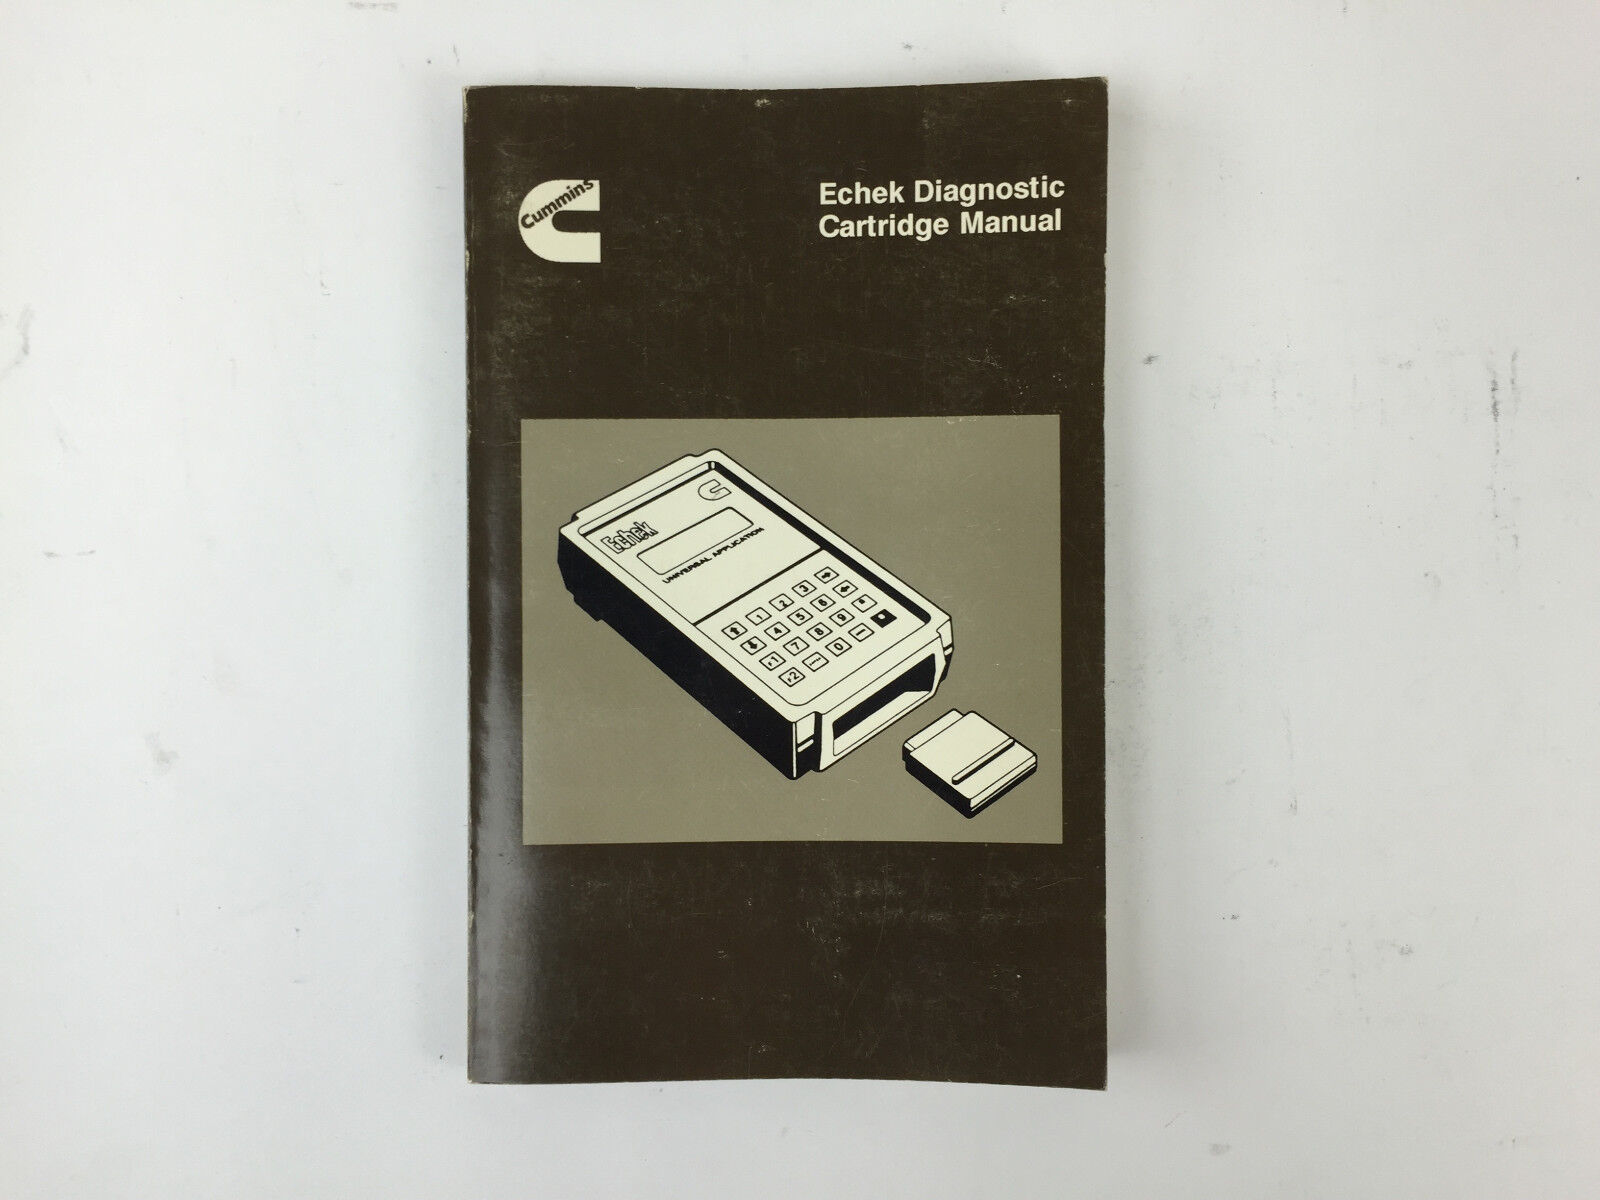 Cummins Echek Diagnostic Cartridge Manual